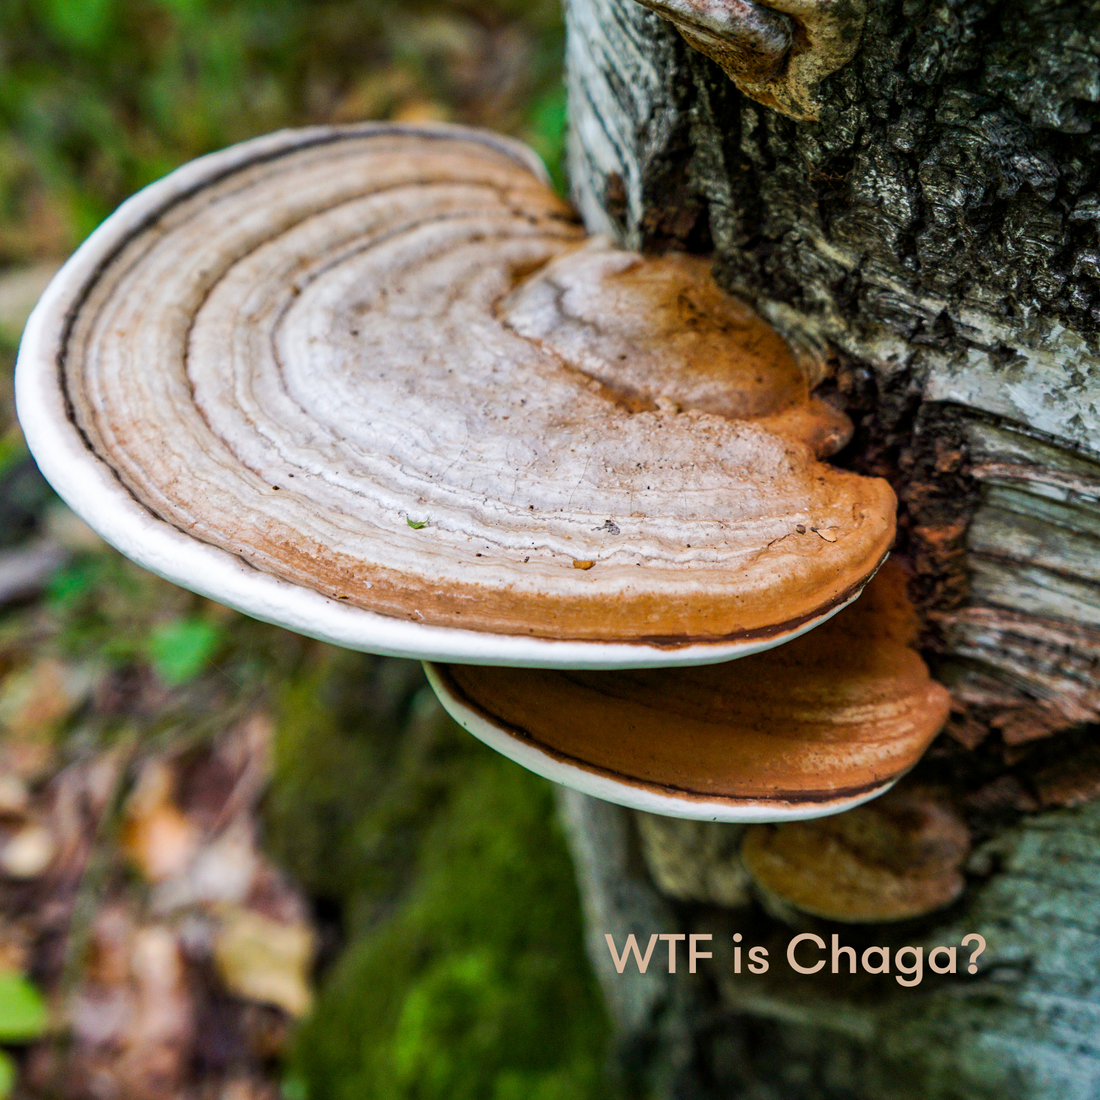 Chaga adaptogenic superfood mushroom